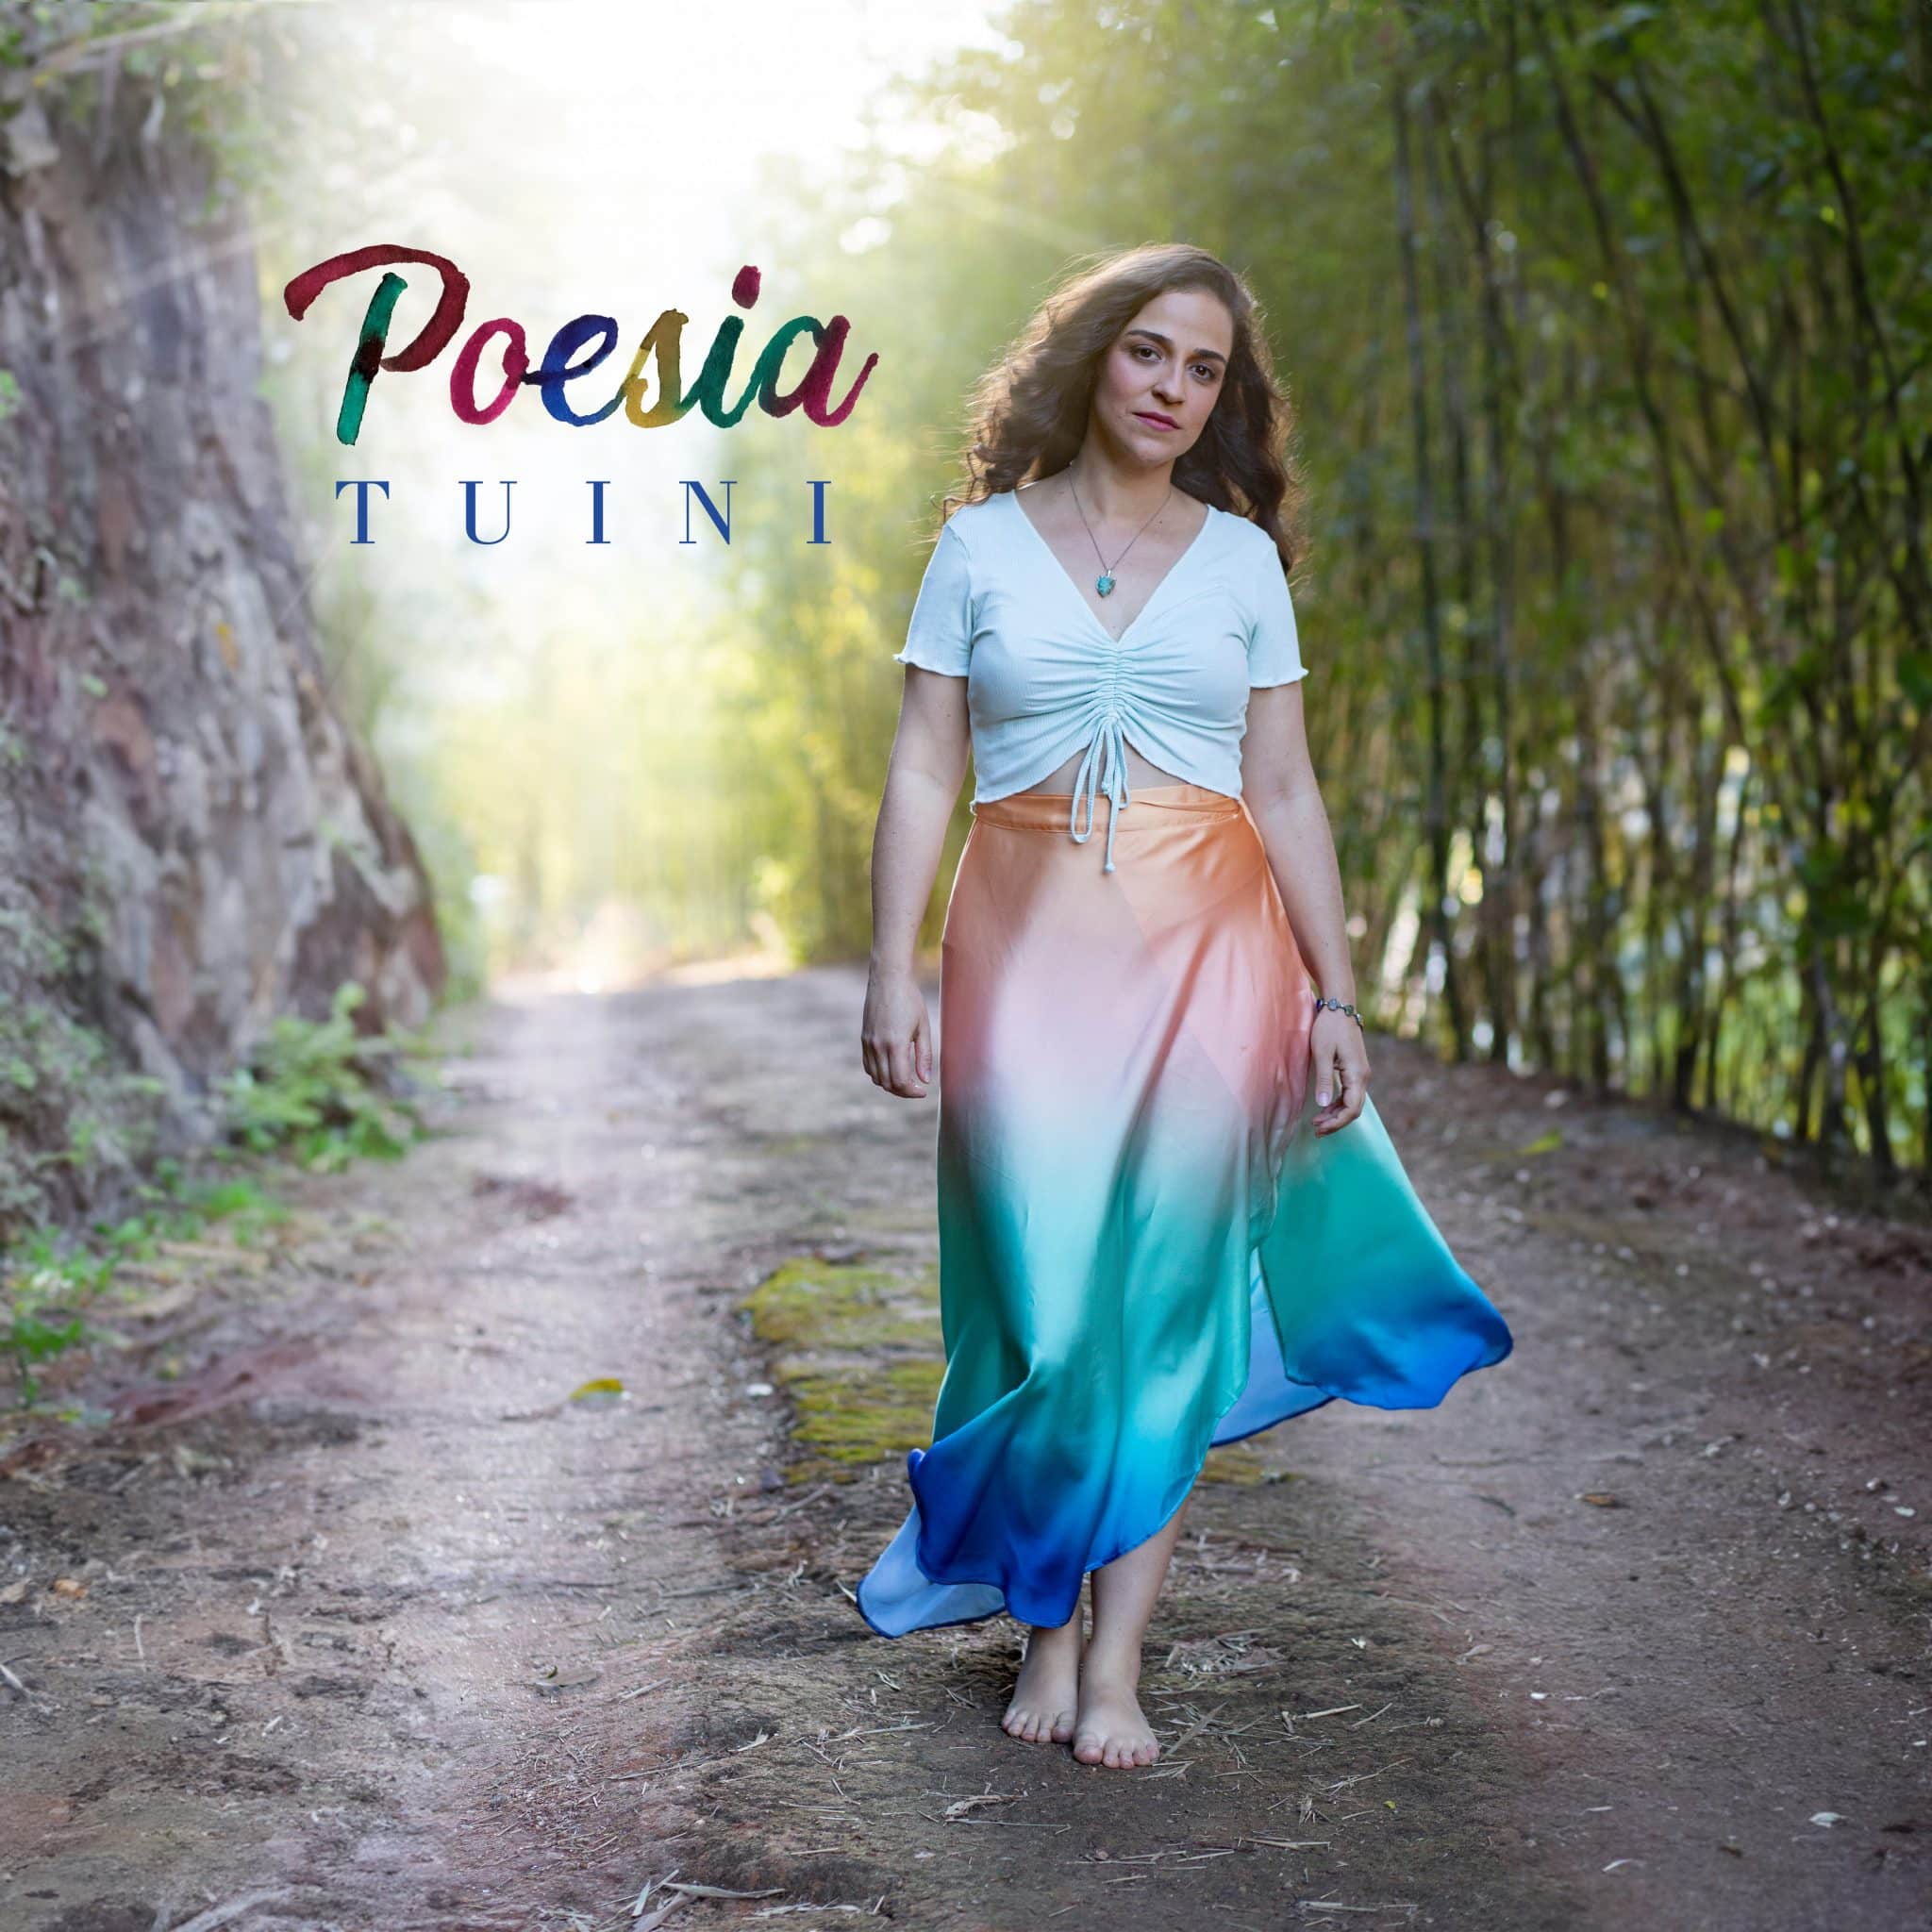 revistaprosaversoearte.com - A cantora e compositora Tuini lança "Poesia", single e clipe do seu segundo disco autoral